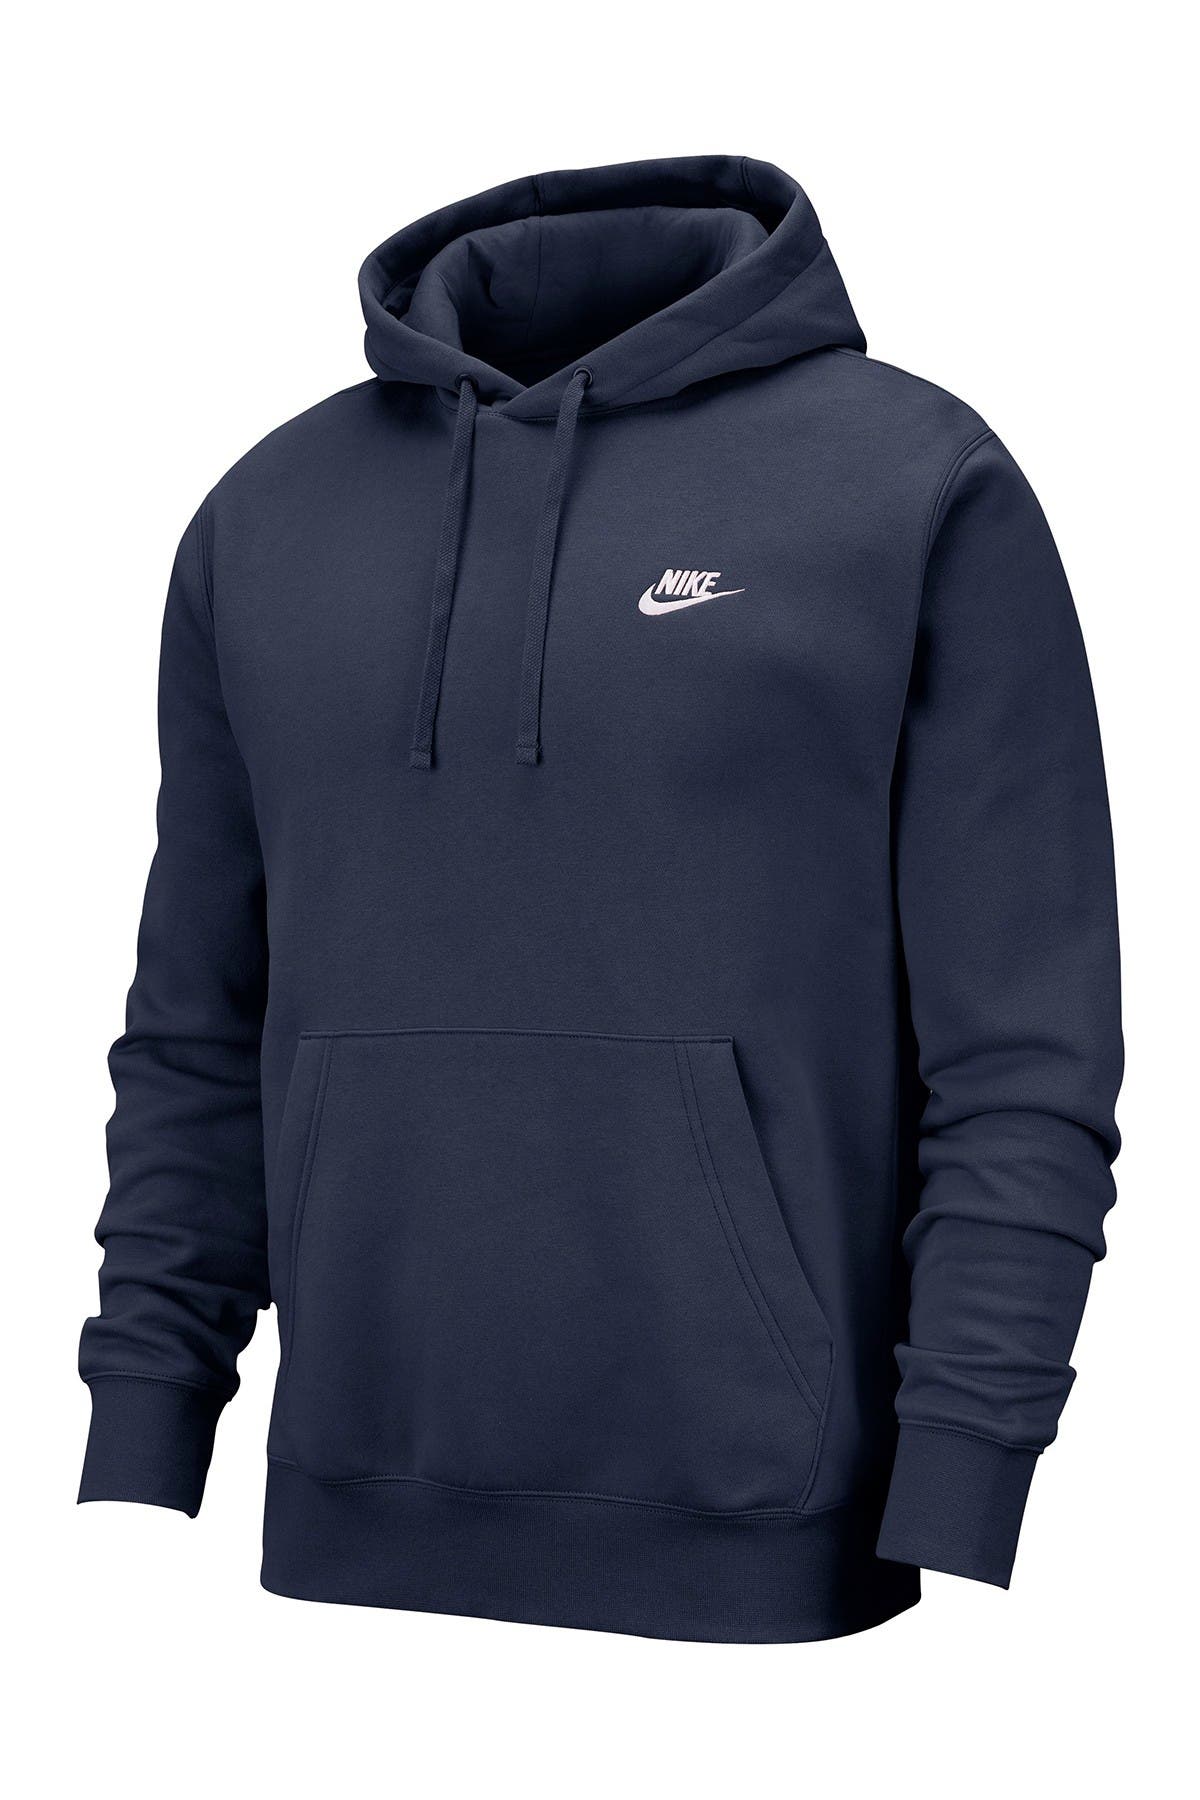 nike hoodies under $20